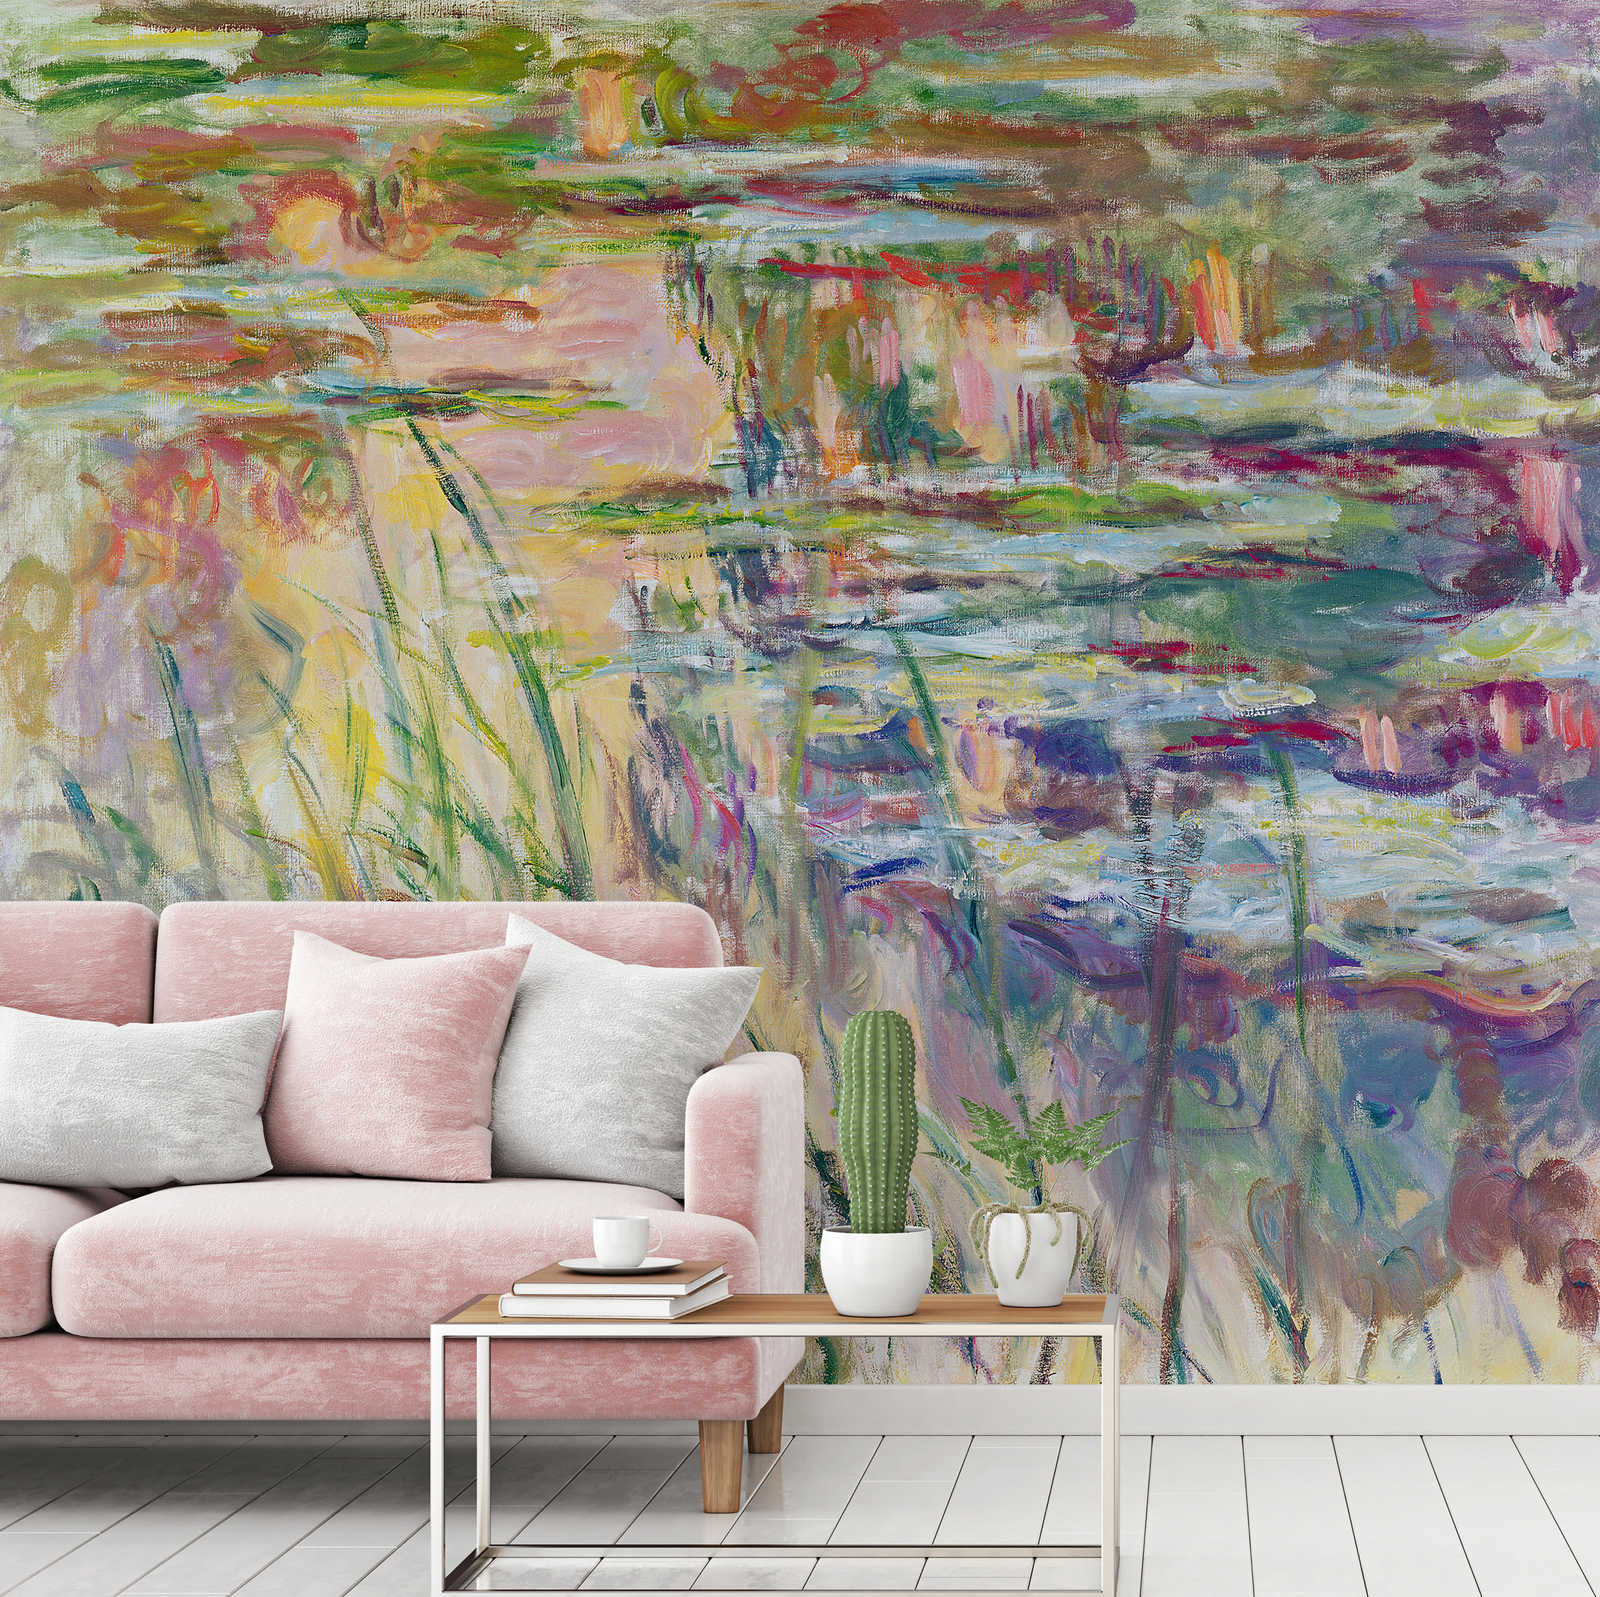             Muurschildering "Reflecties op het water" van Claude Monet
        